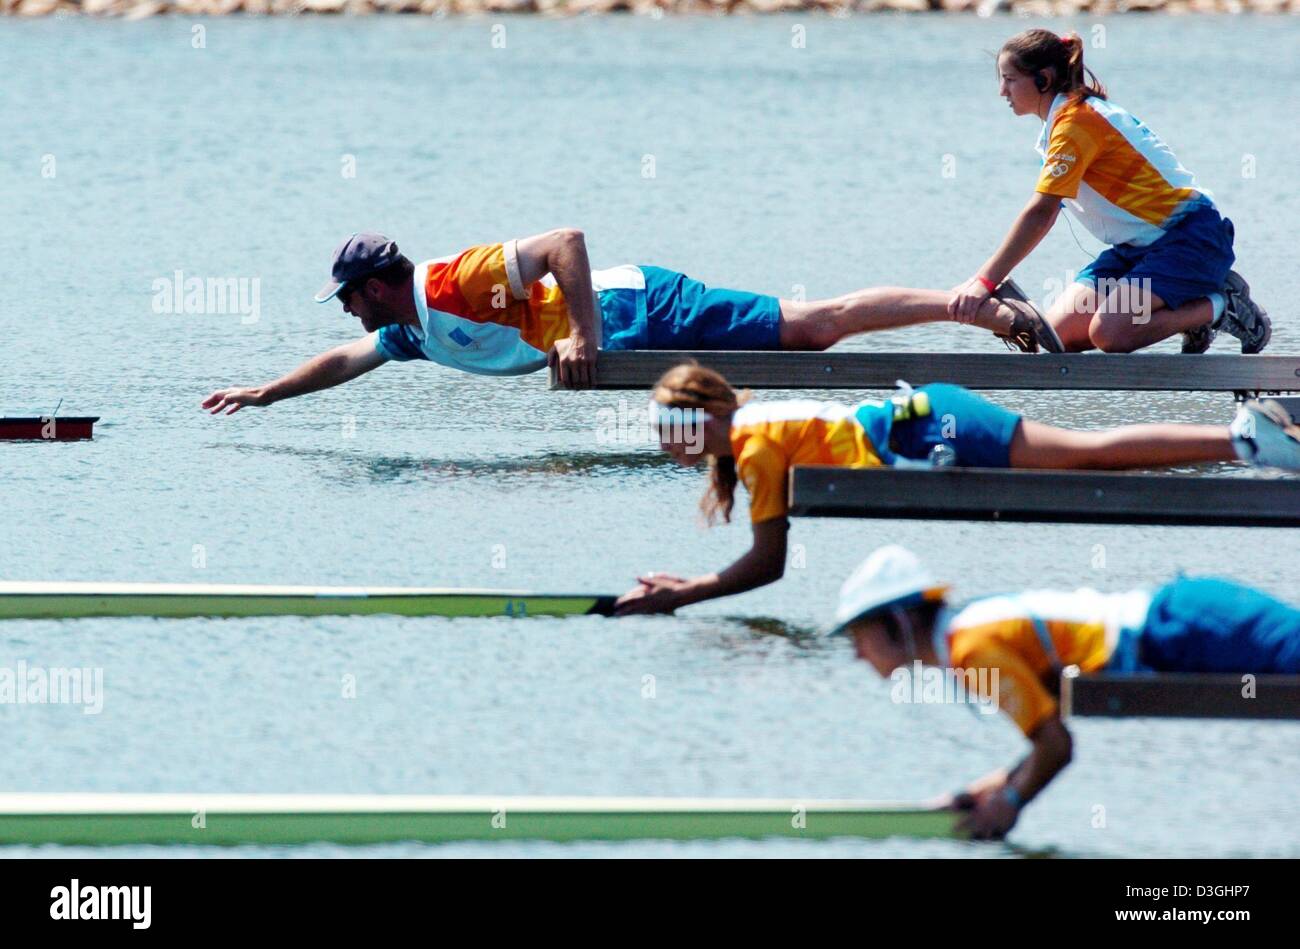 (Dpa) - Veranstaltungsort-Assistenten auf die Boote vor dem Start in die leichte Frauen einzelner Scull Hoffnungslauf Olympic Rowing Center in Shinias, Griechenland, 17. August 2004 halten. Stockfoto